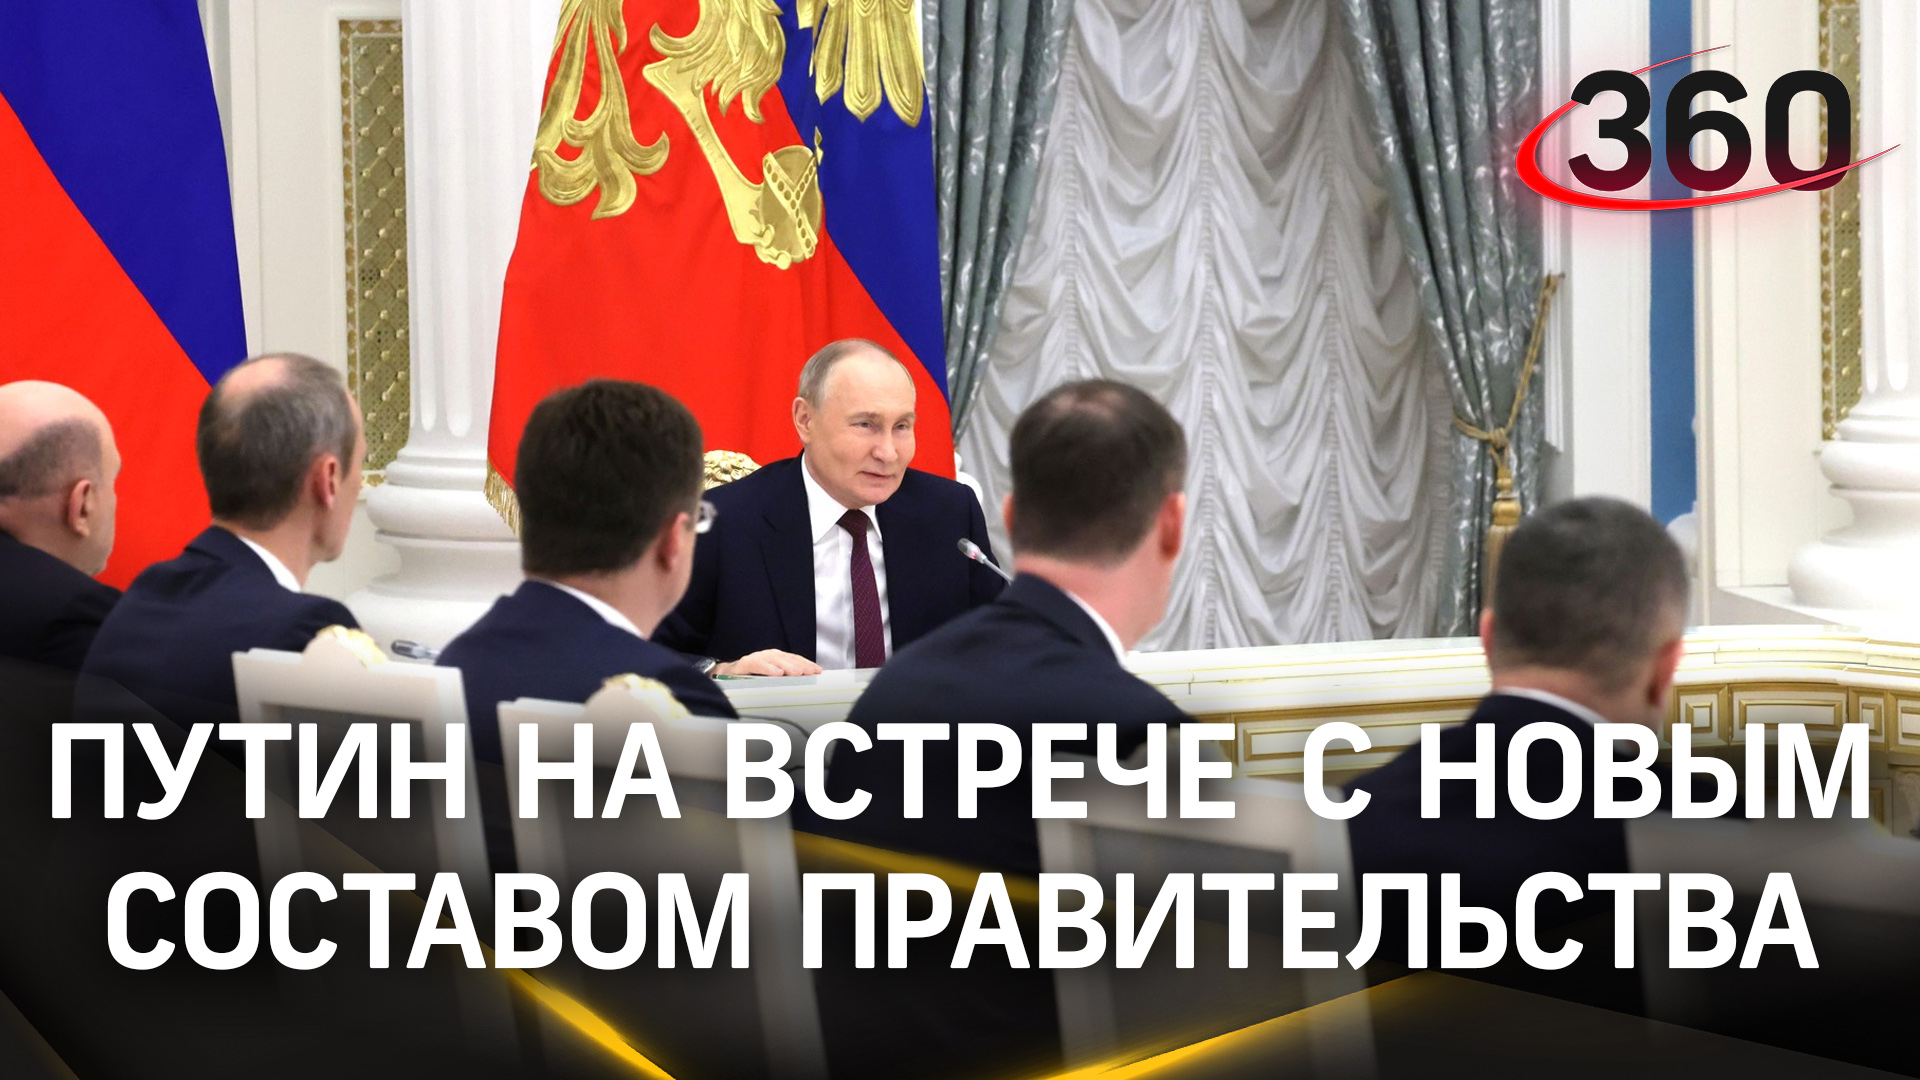 «Впереди много задач»: что рассказал Путин на встрече с новым составом правительства РФ